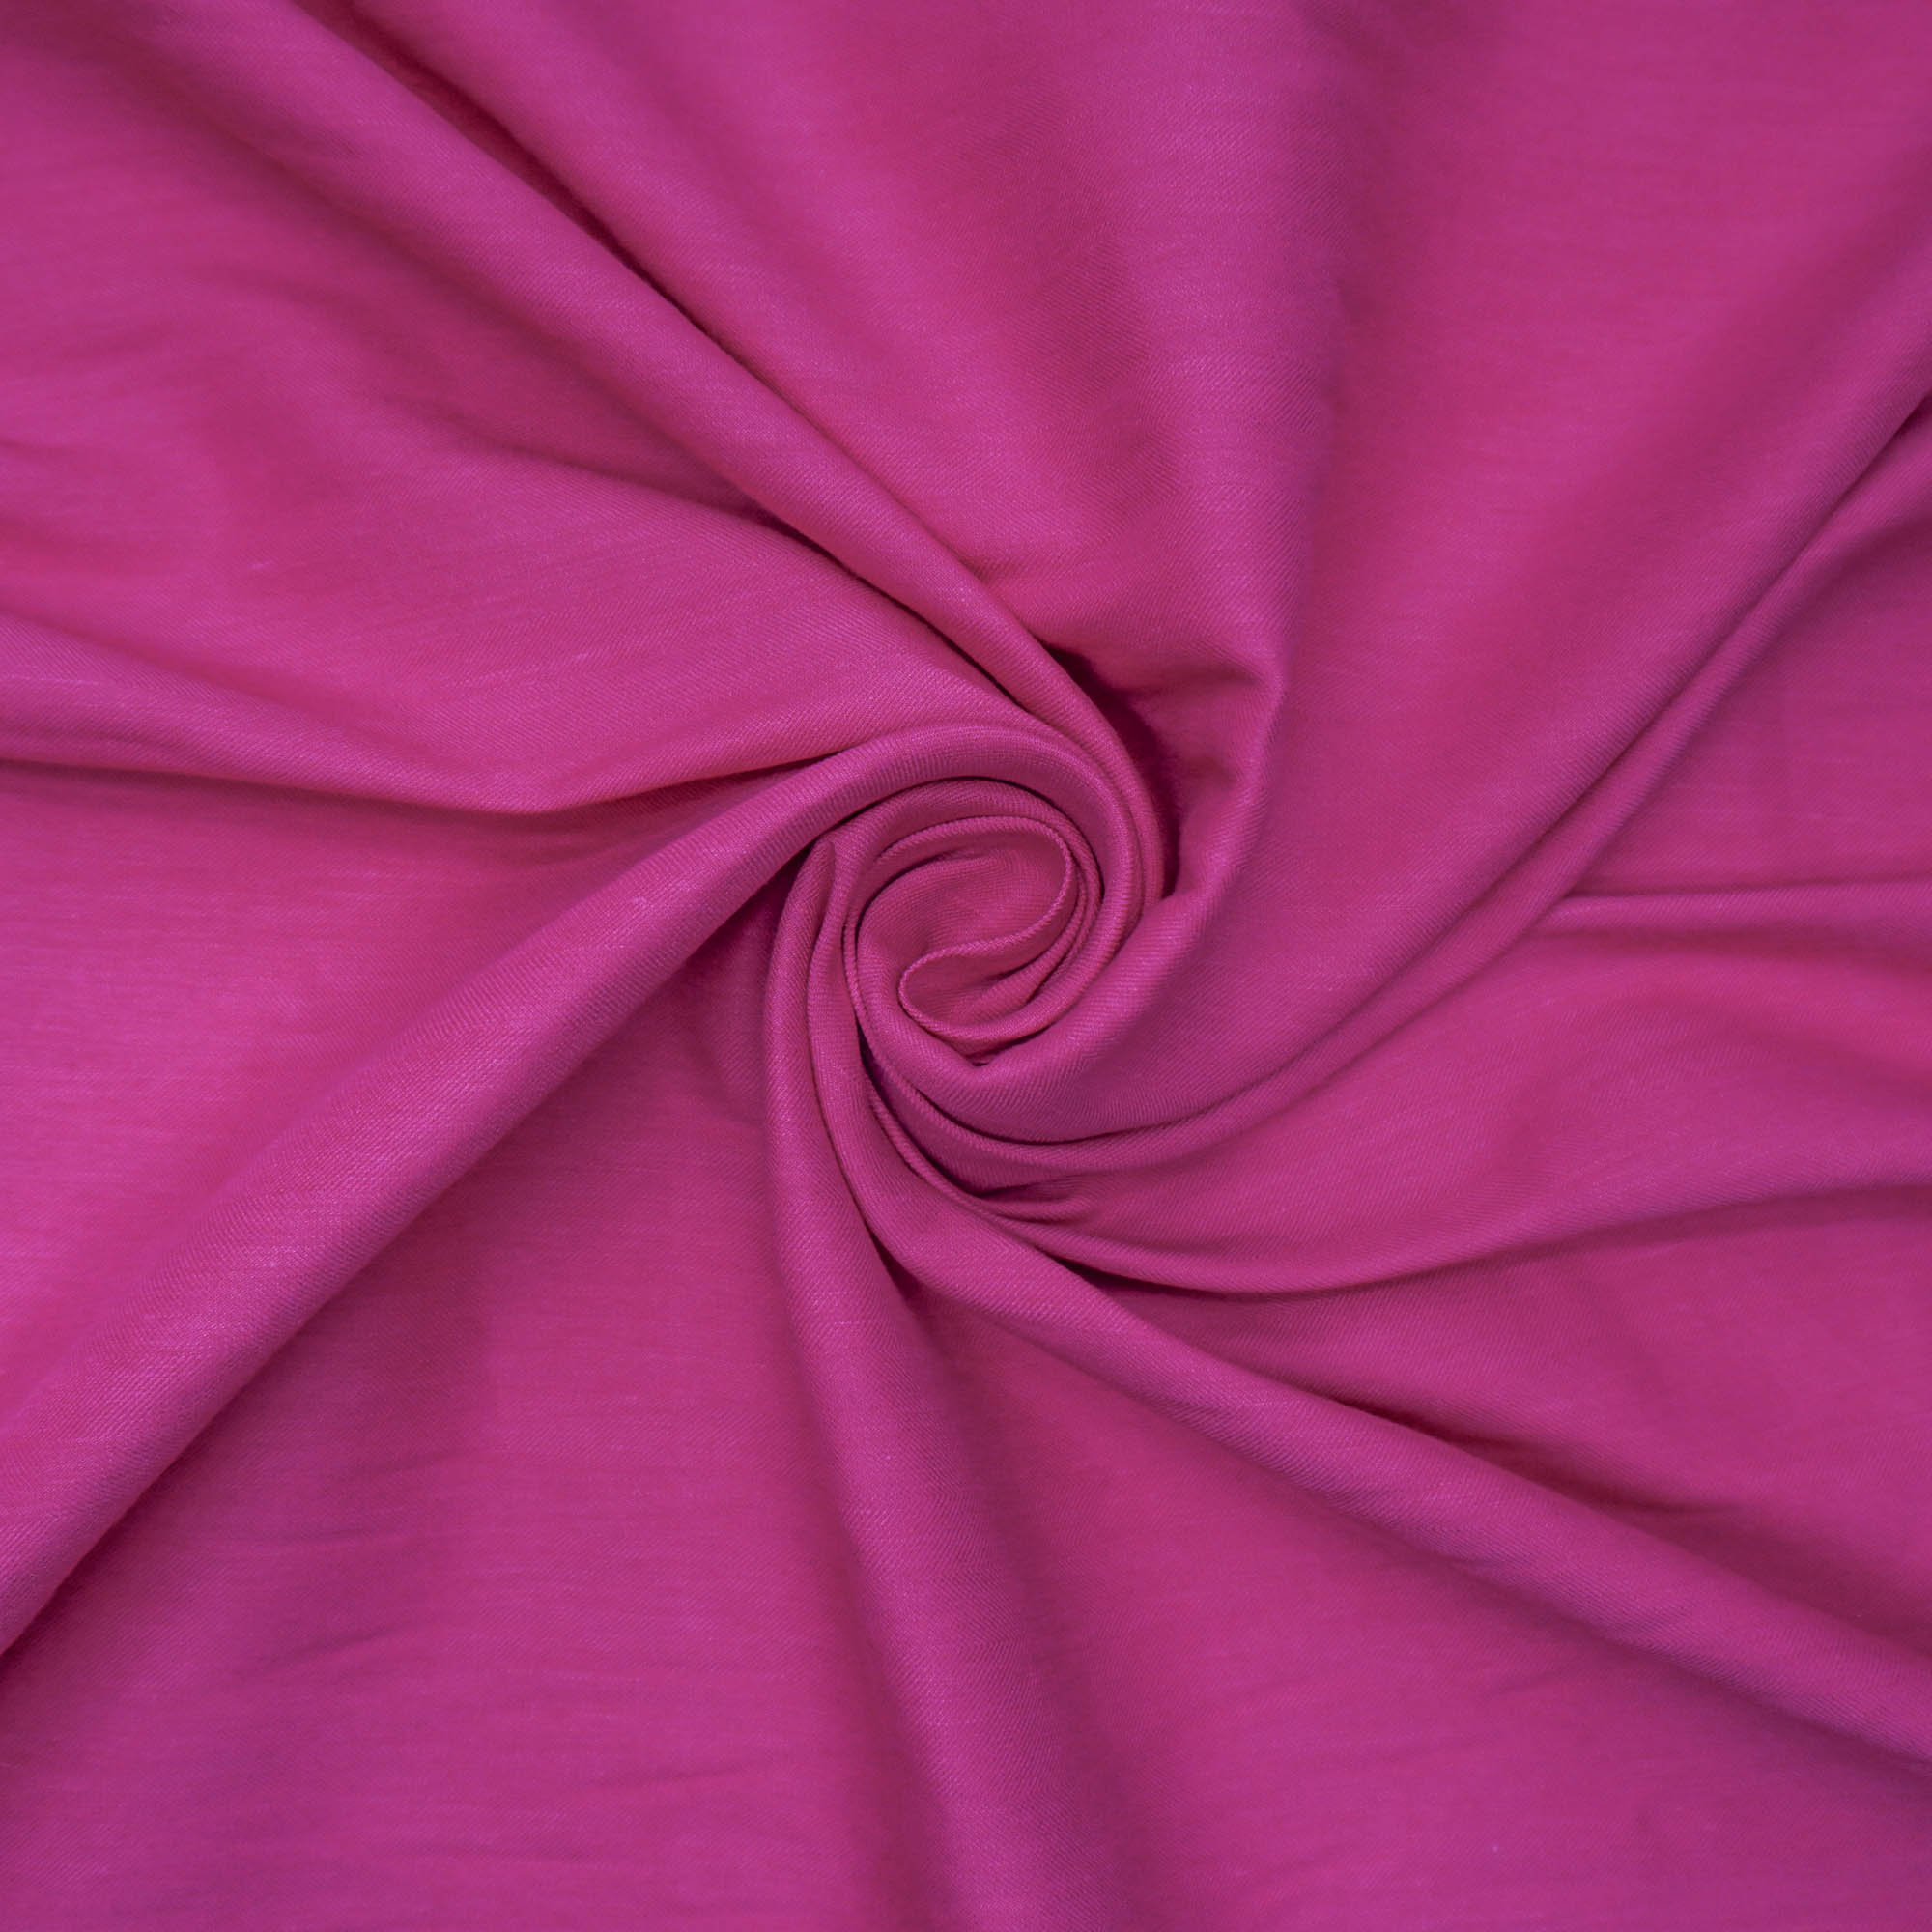 Tecido linho misto com elastano pink (tecido italiano legítimo)